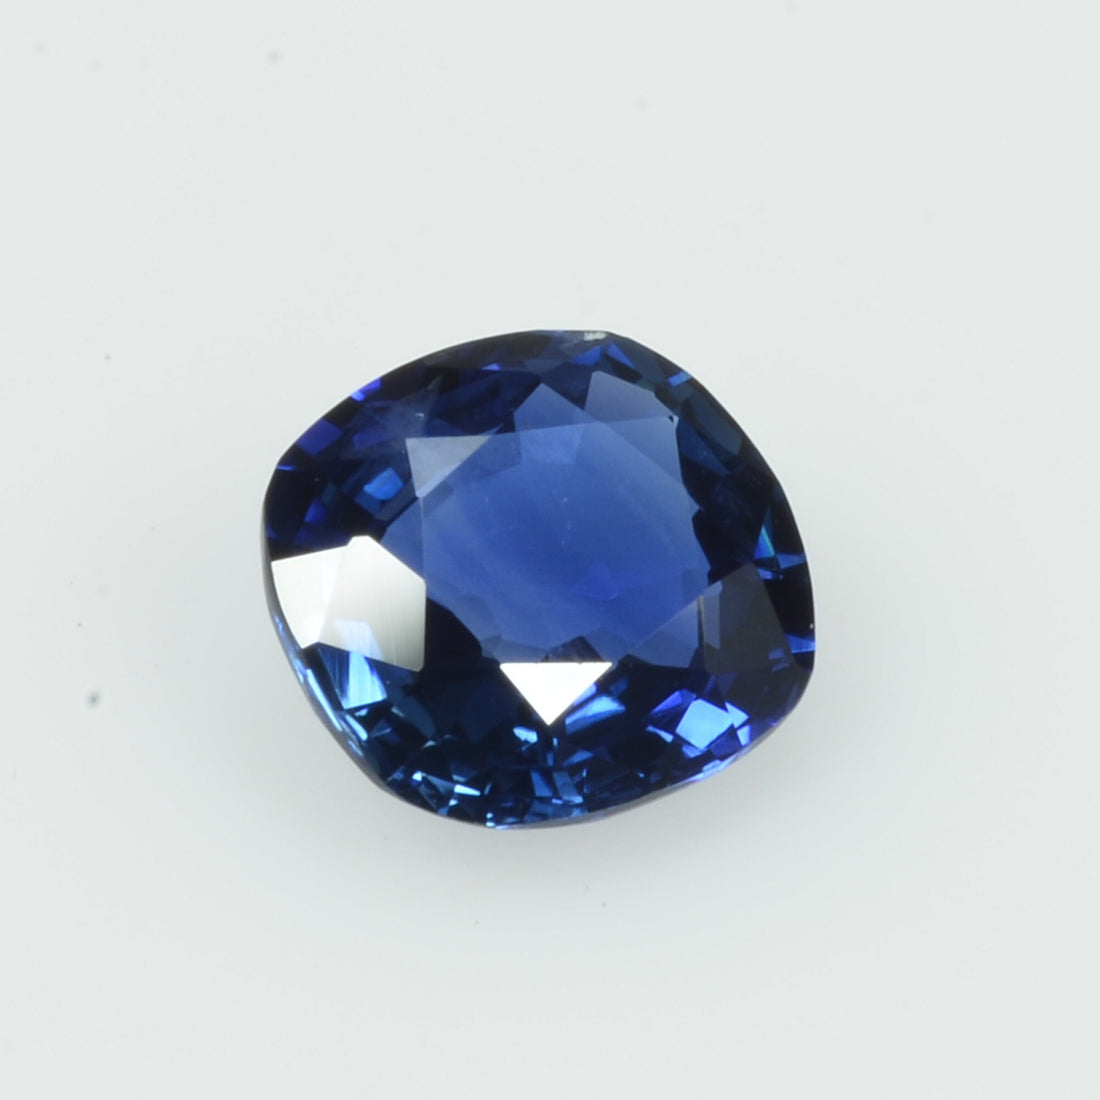 1.06 cts Natural Blue Sapphire Loose Gemstone Cushion Cut